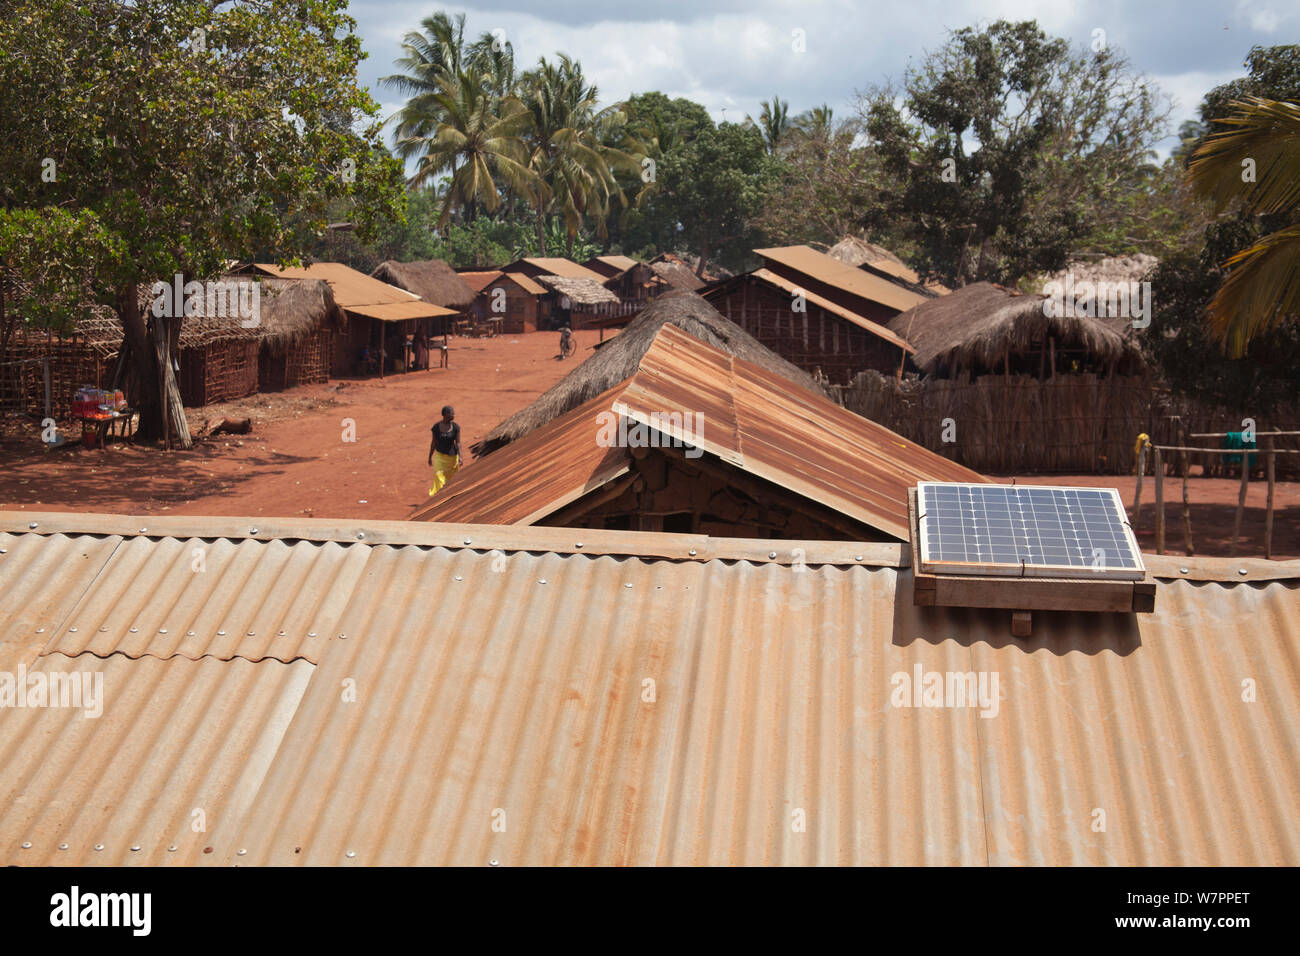 Panneau solaire sur un toit en tôle ondulée, village de la région, en Tanzanie. Miono Banque D'Images